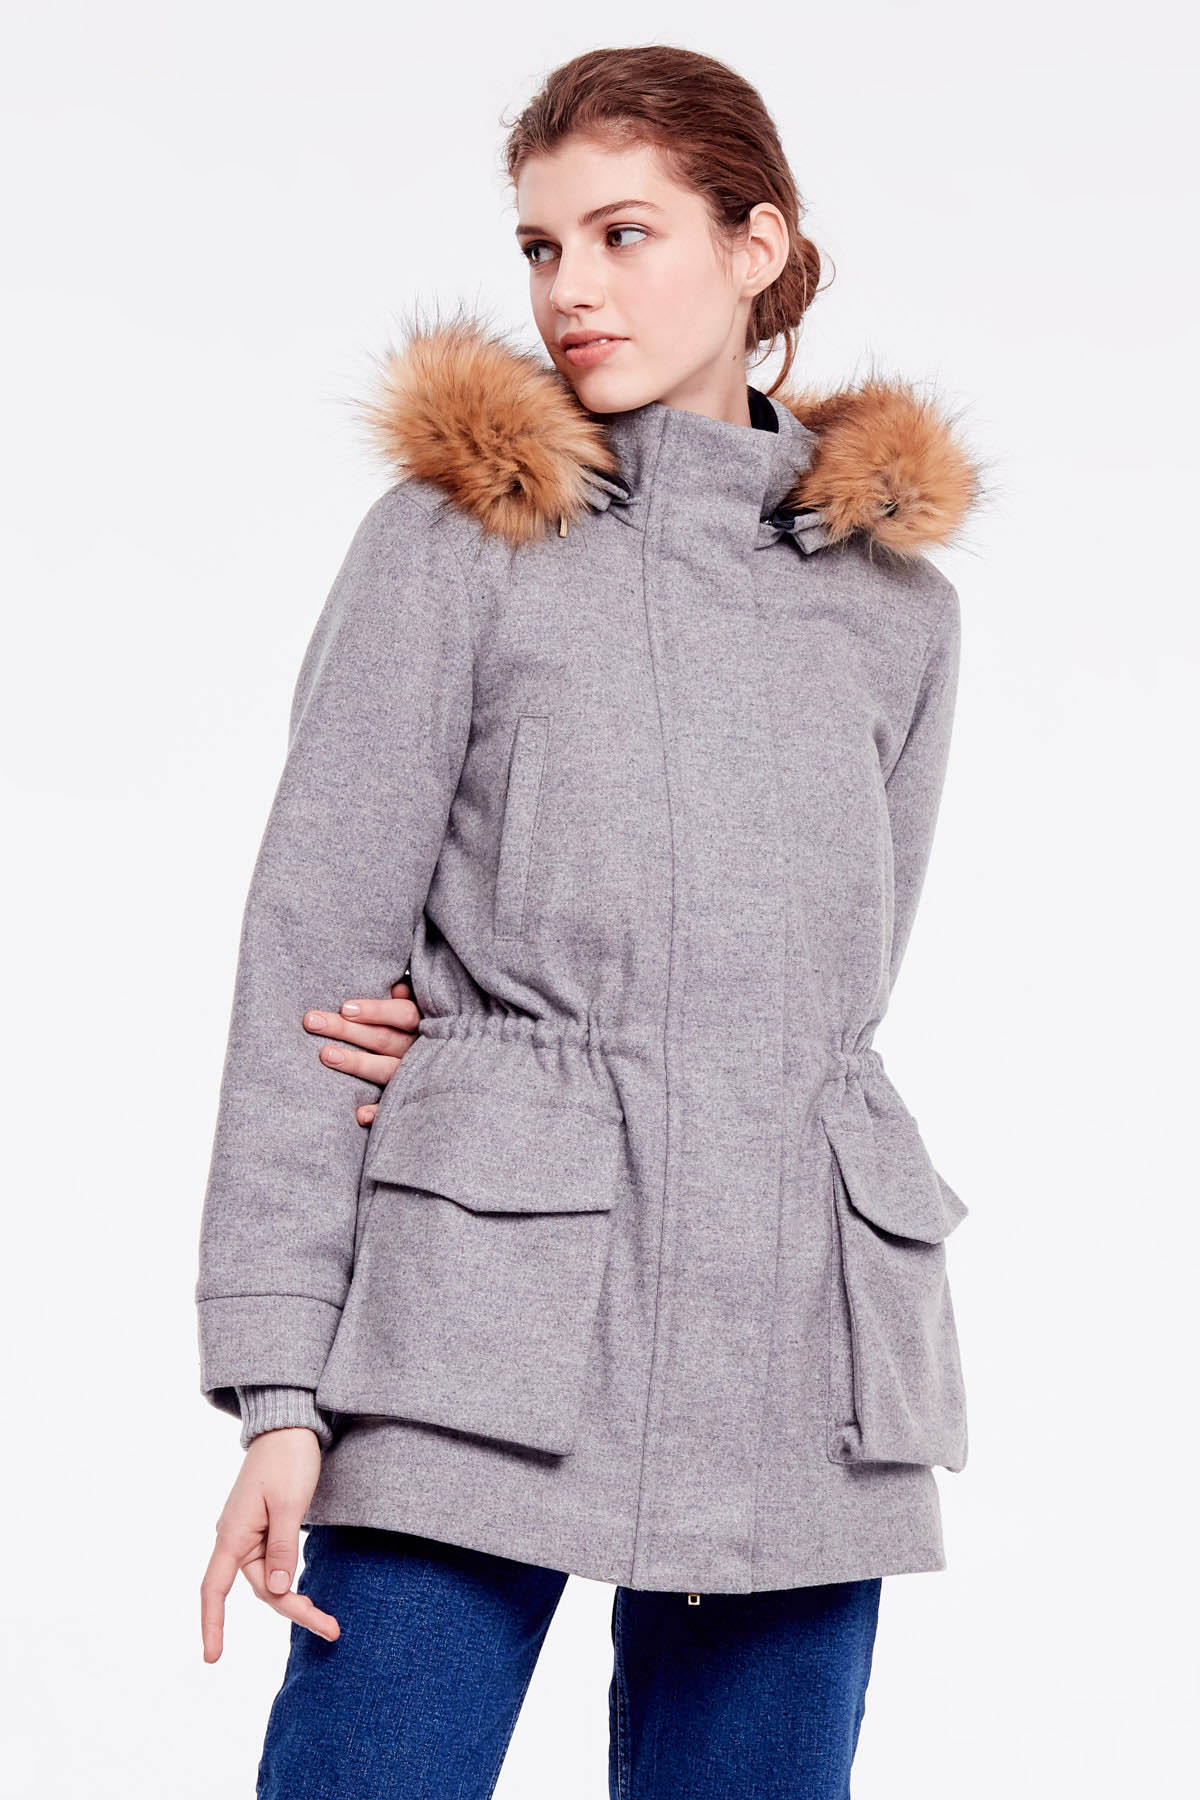 Grey coat with hood, photo 1